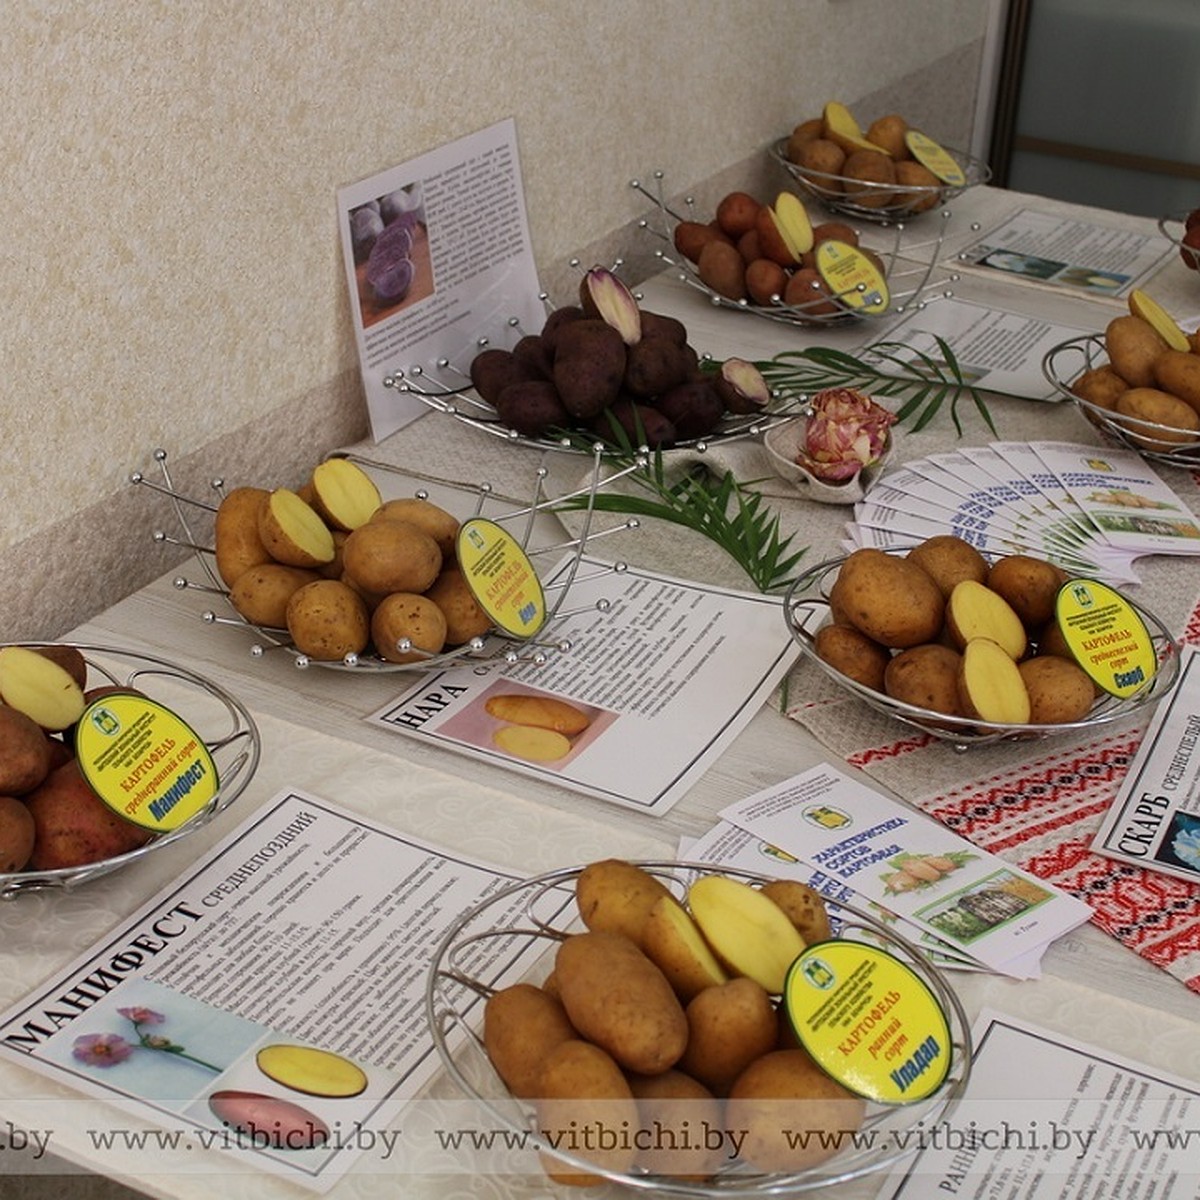 Белорусские эксперты назвали самые вкусные сорта картофеля - KP.RU